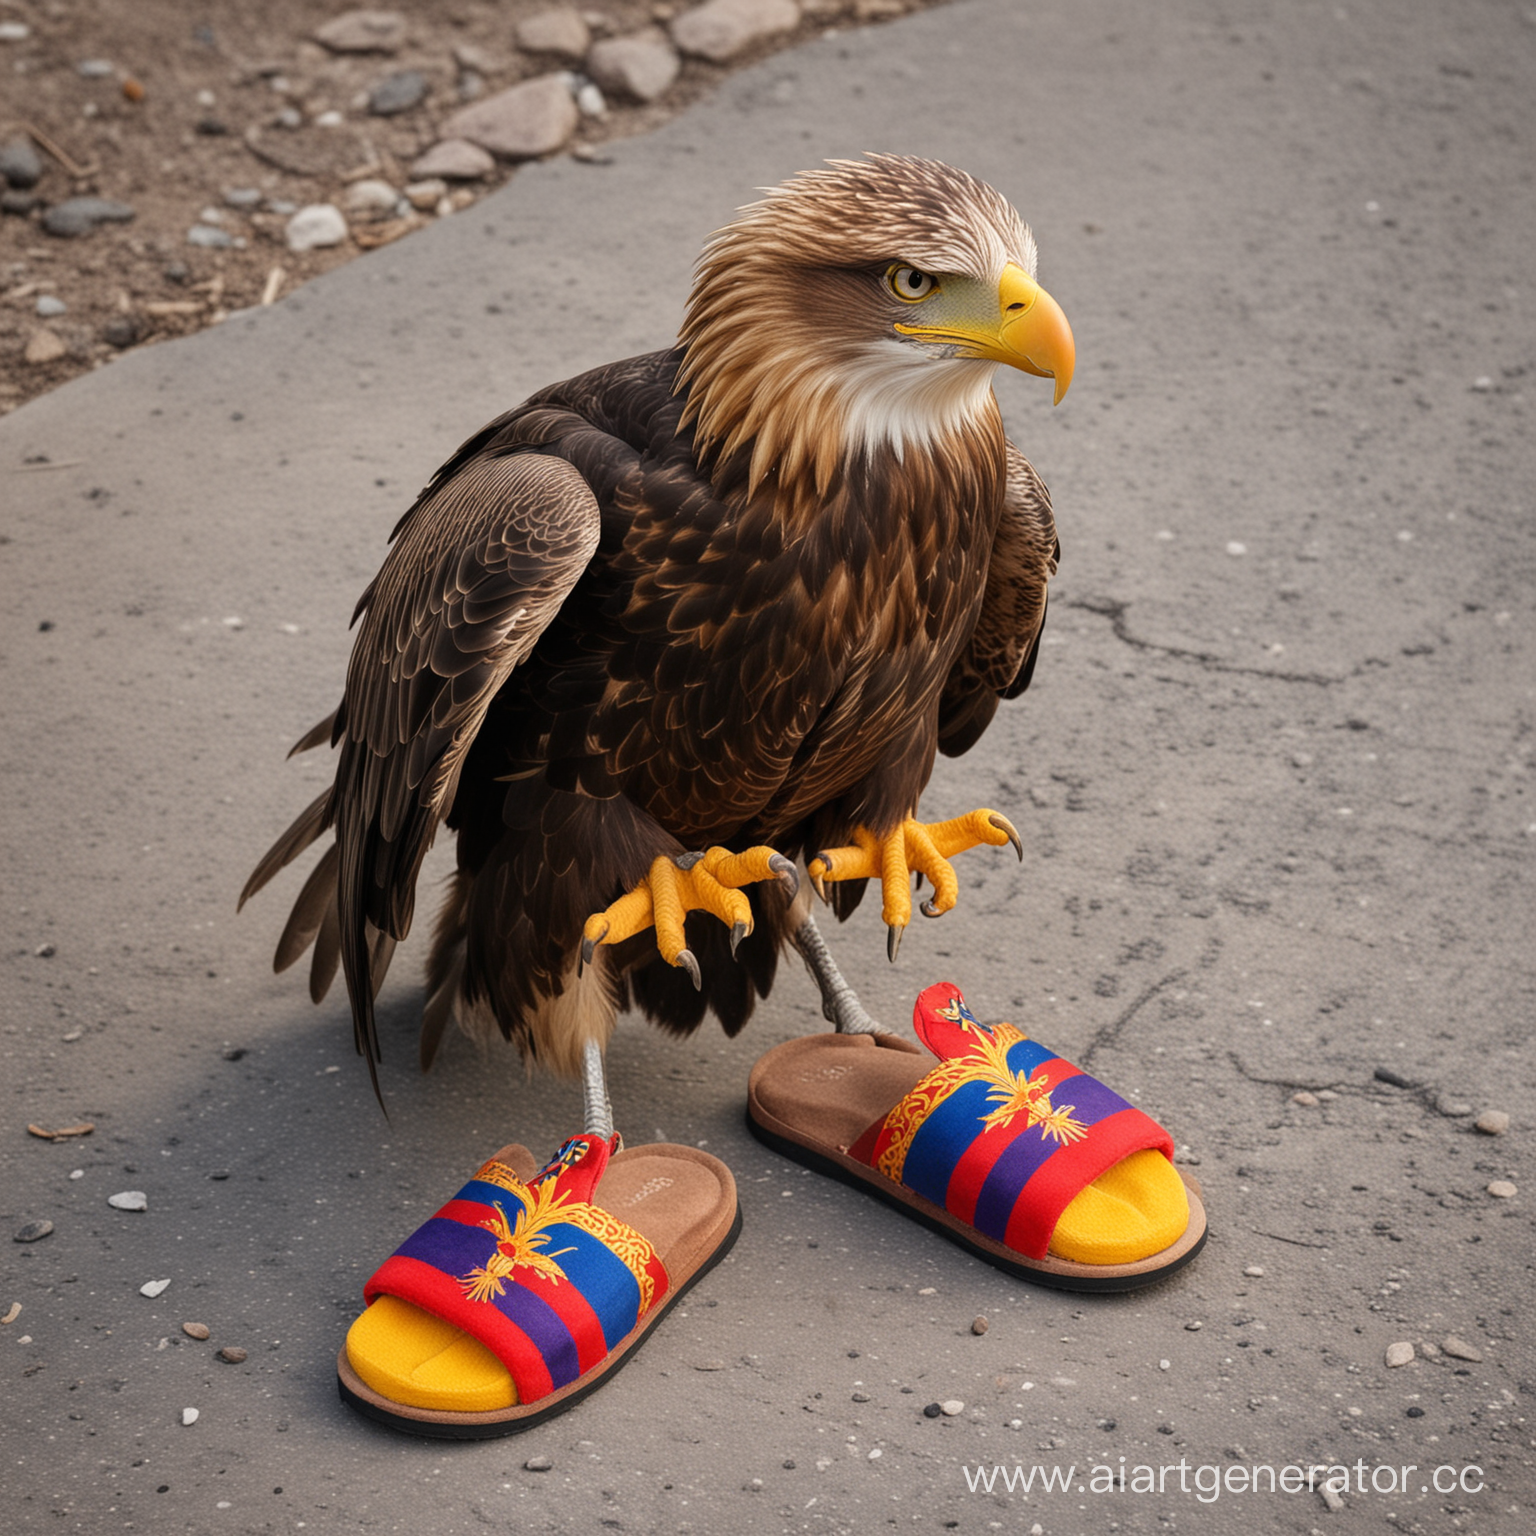 armenian eagle wearing slippers